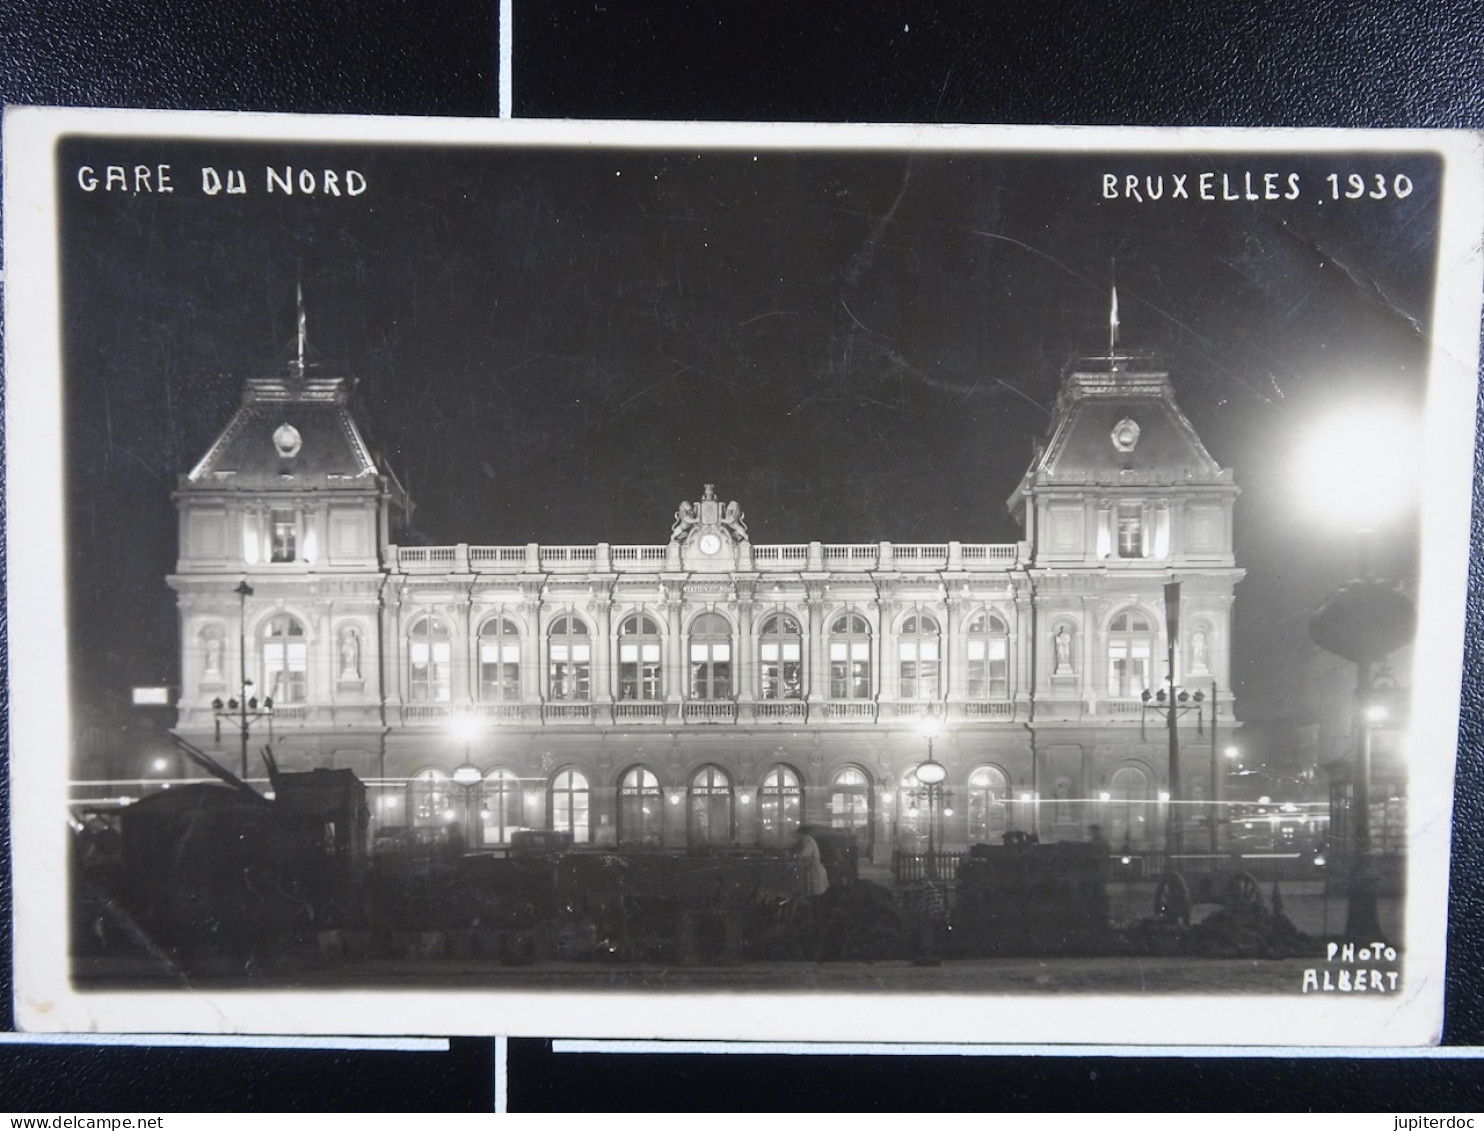 Bruxelles 1930 Gare Du Nord (Photo Albert) - Cafés, Hoteles, Restaurantes